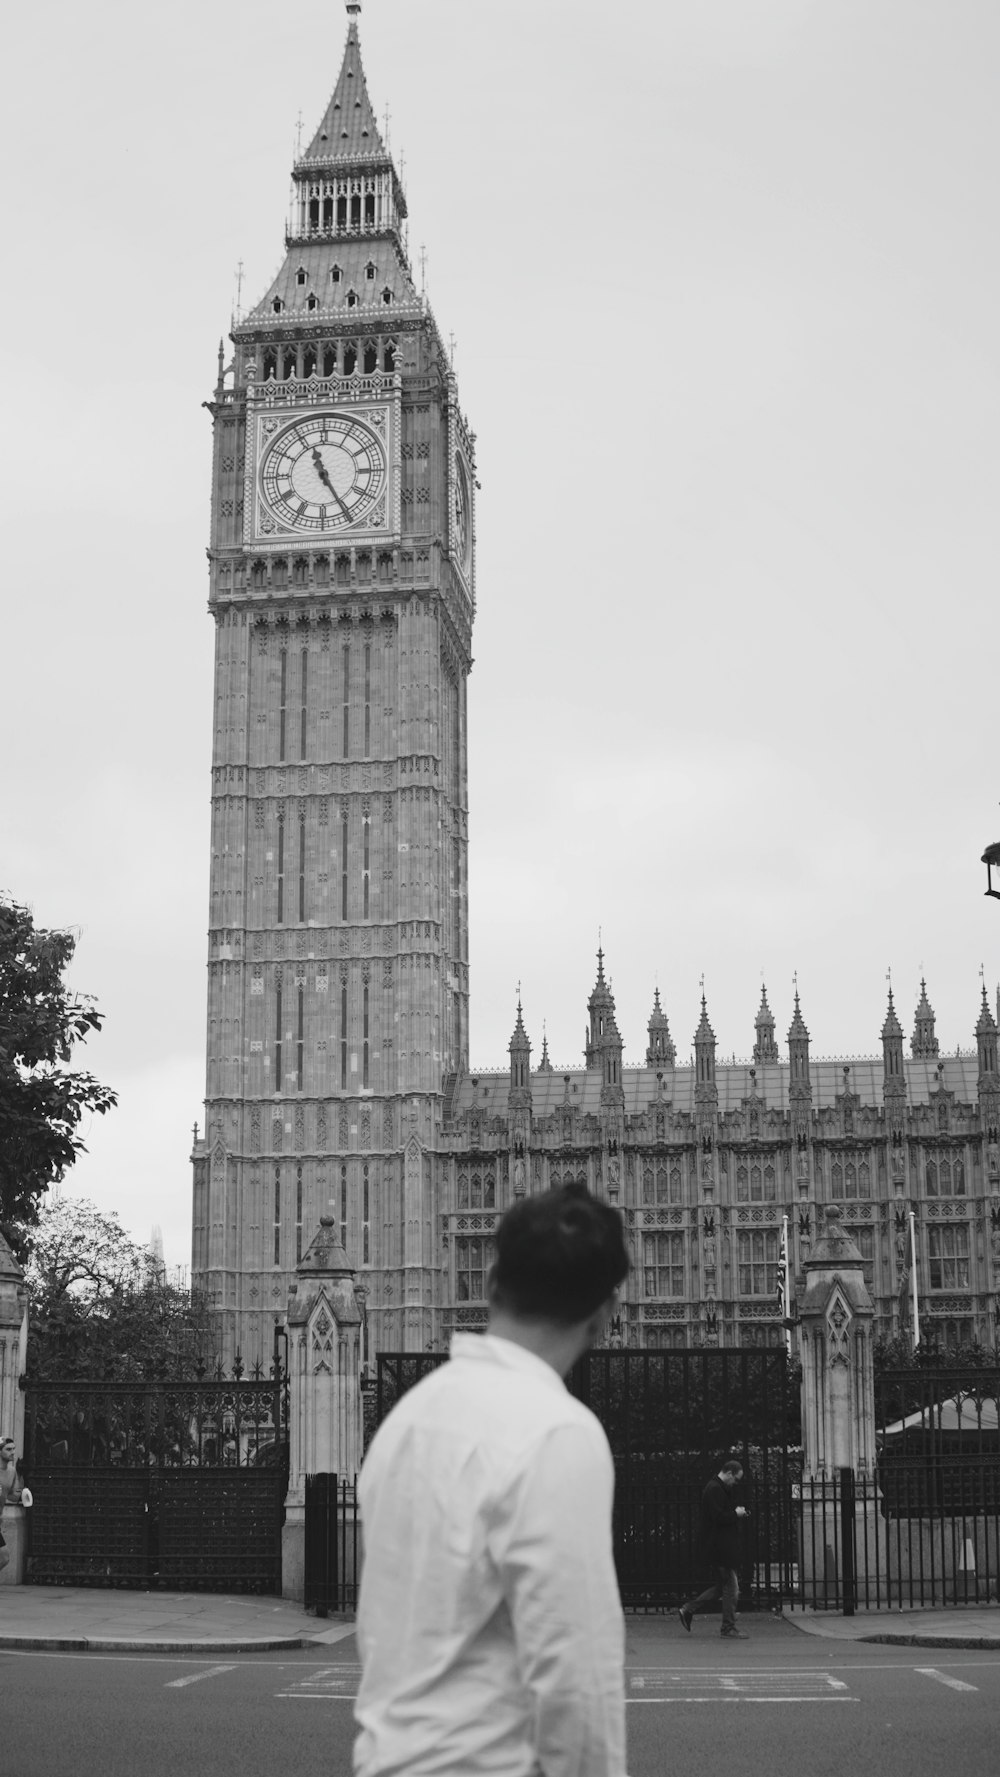 Un homme debout devant une haute tour de l’horloge